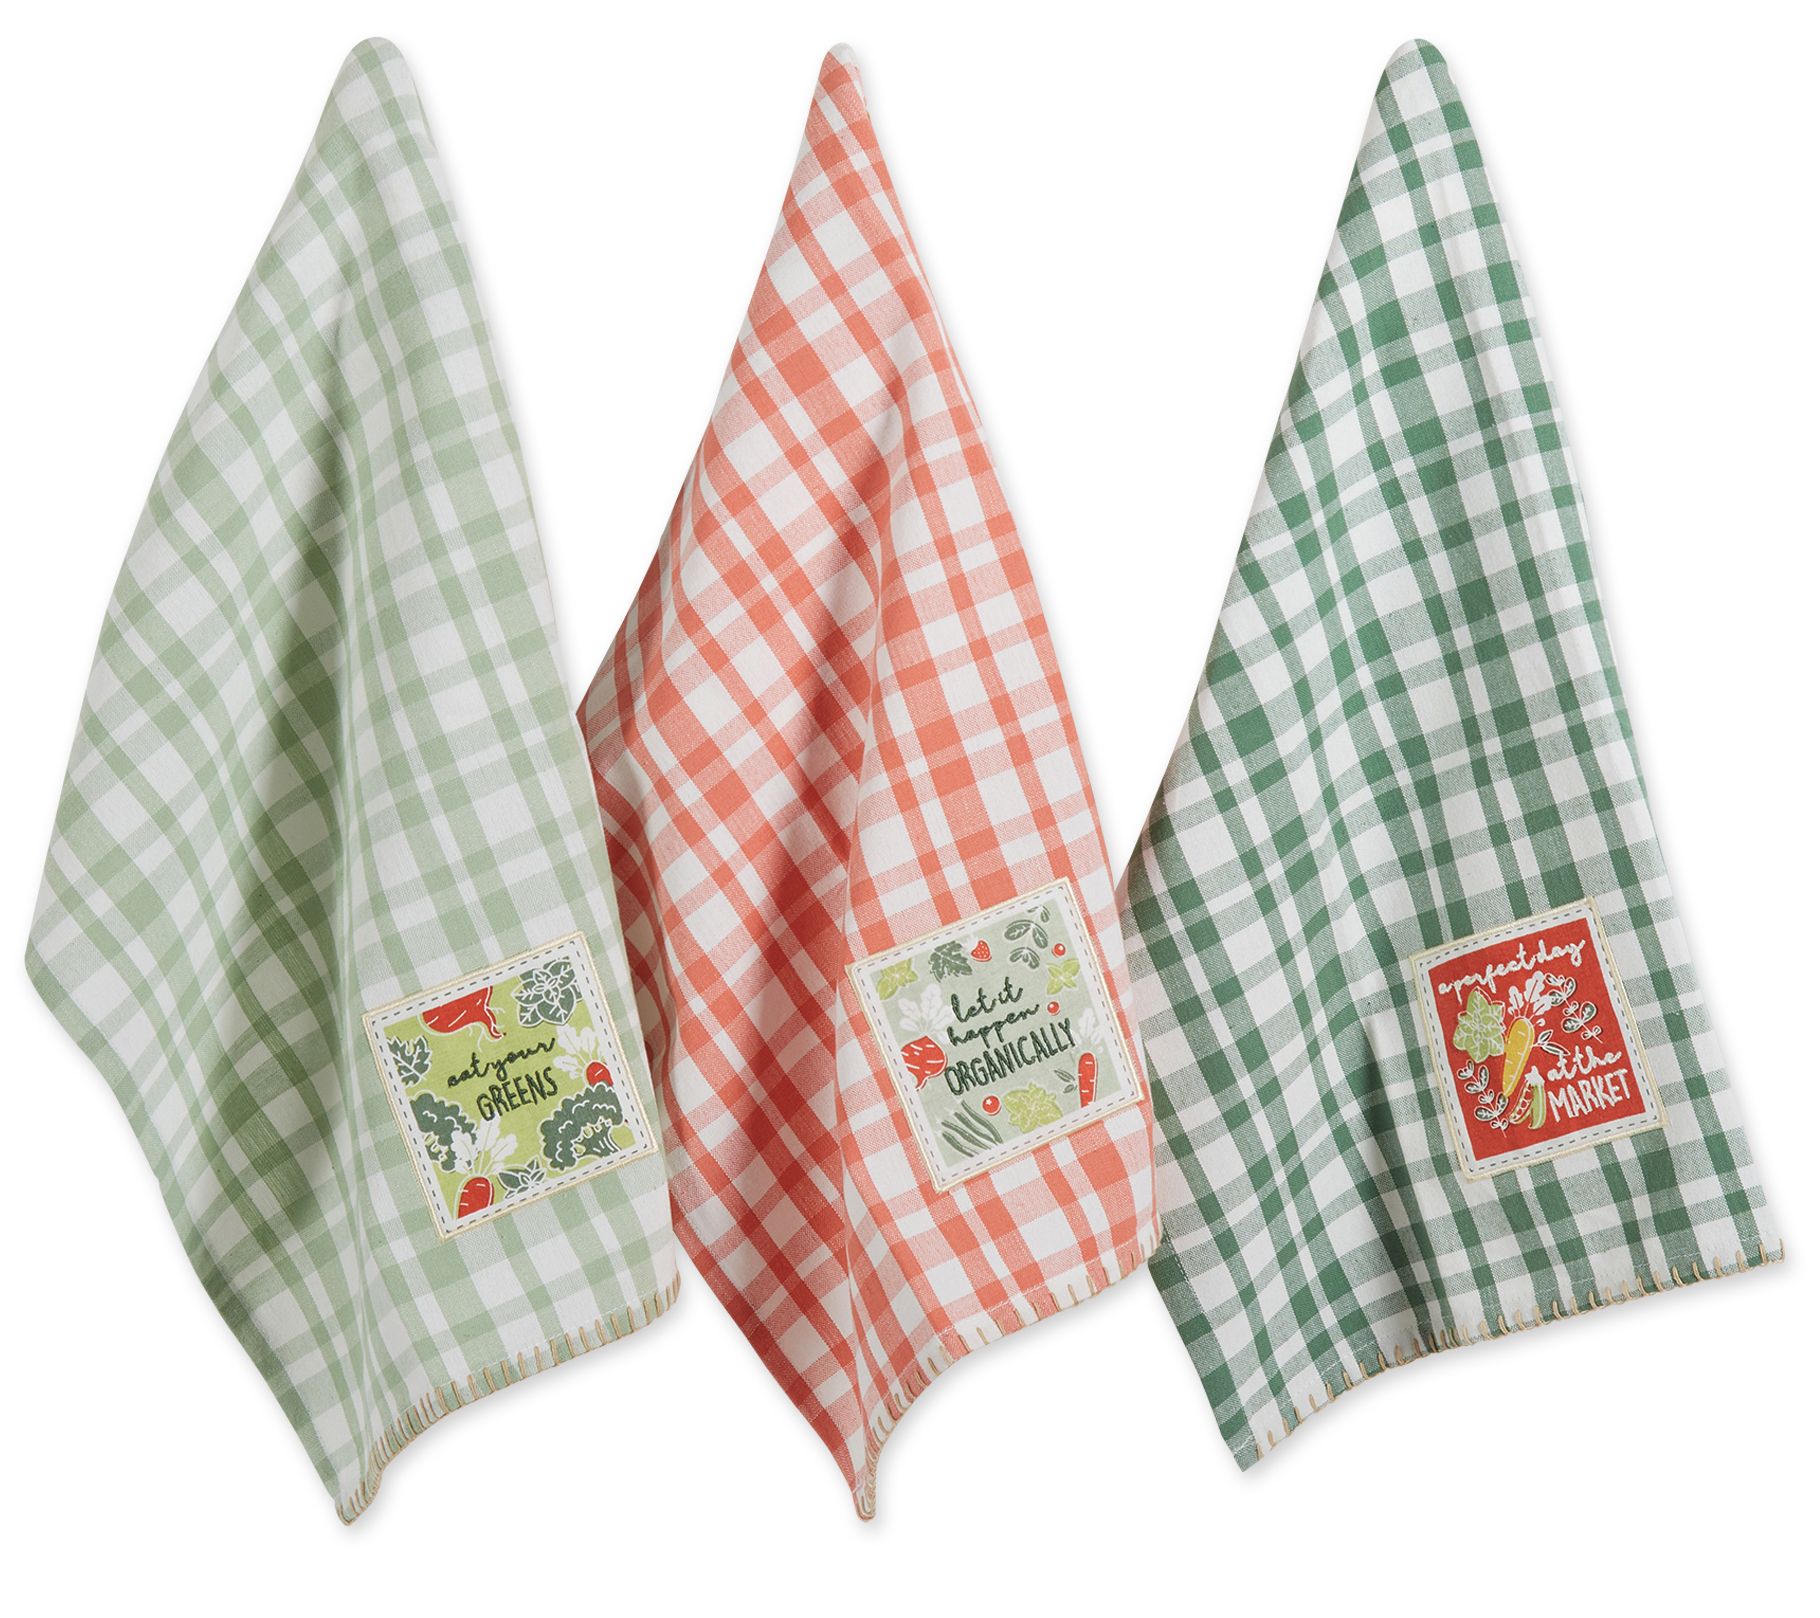 Design Imports Farm Embellished Kitchen Towel Set/4 